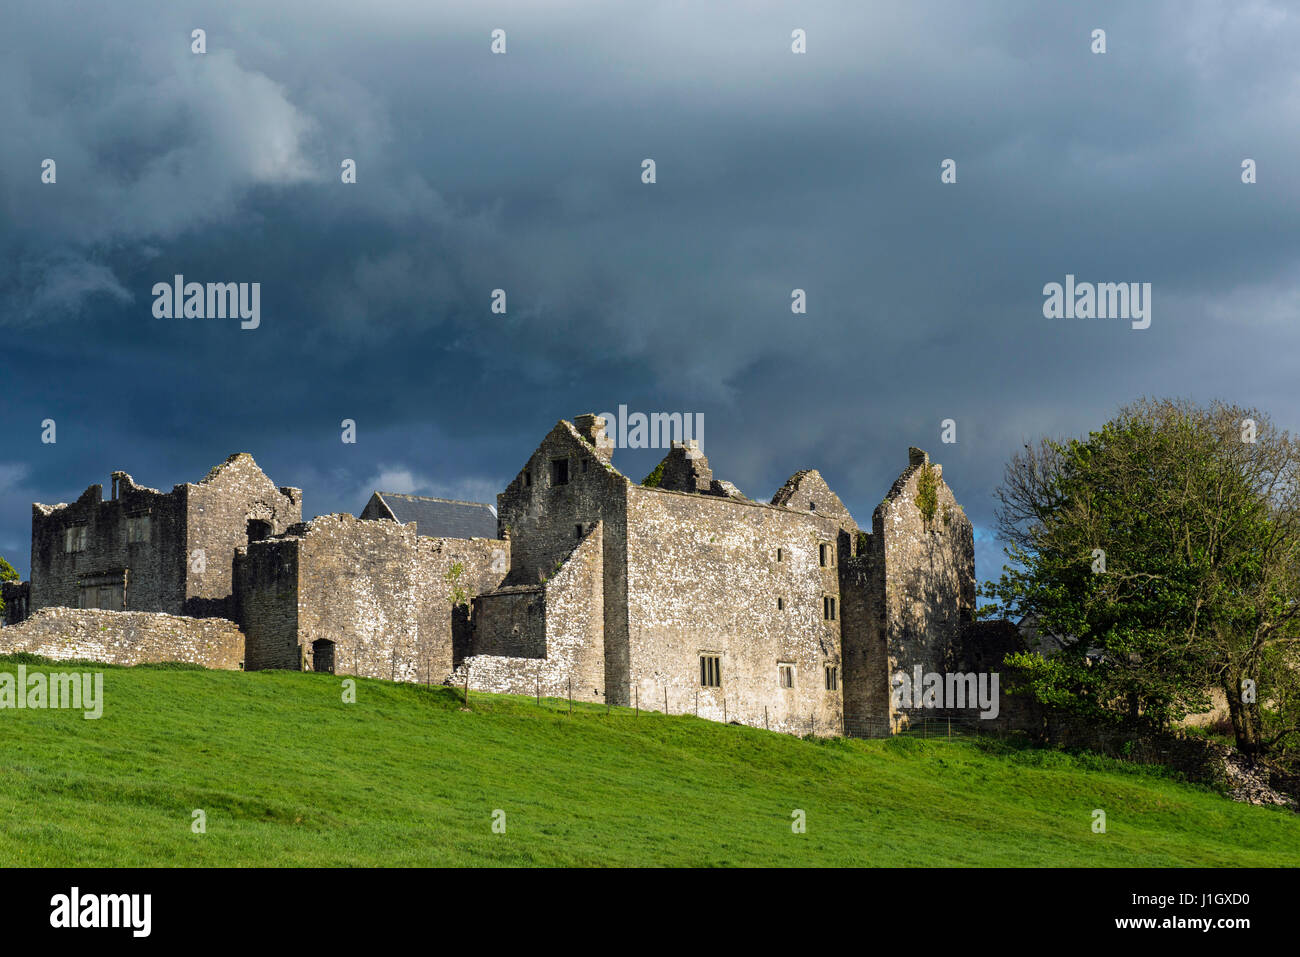 Beaupre Castle in der Nähe von Cowbridge in der Vale of Glamorgan in Südwales. Sehr beliebte Besucher steht Beaupre Schloss umgeben von Ackerland Stockfoto